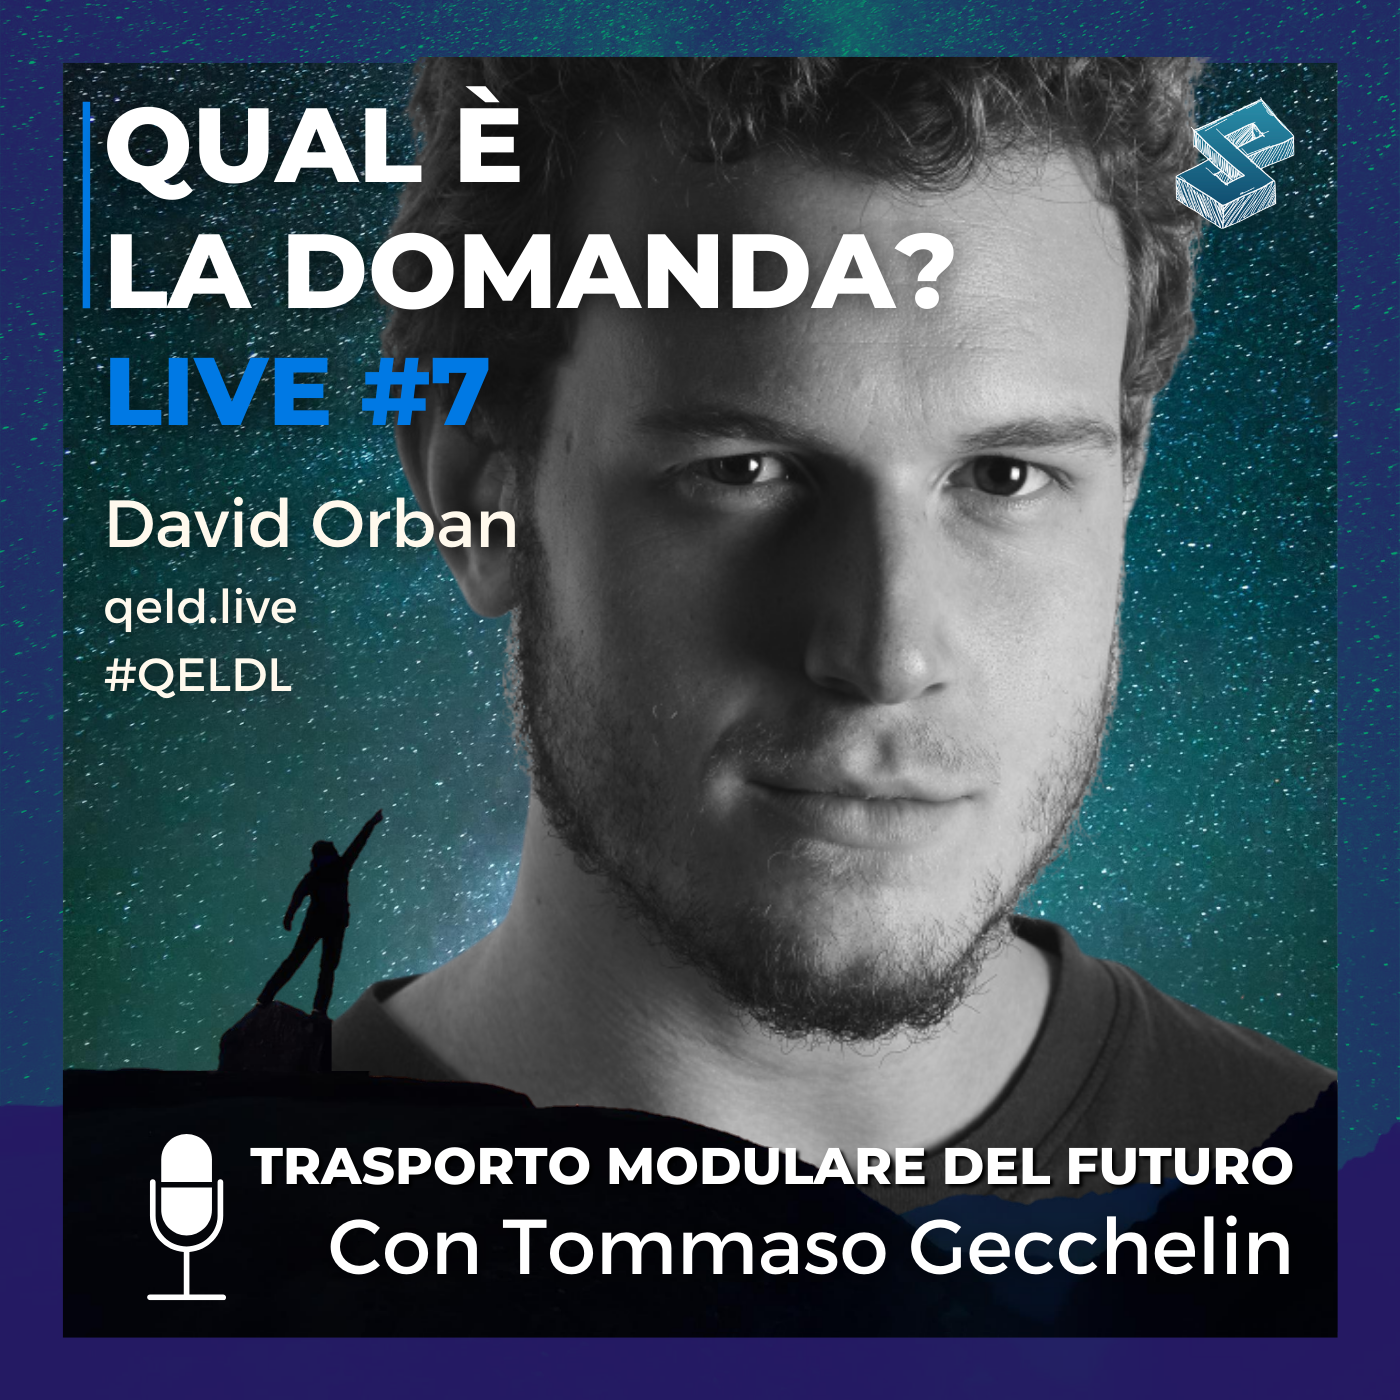 Trasporto modulare del futuro con Tommaso Gecchelin - QELDL #7